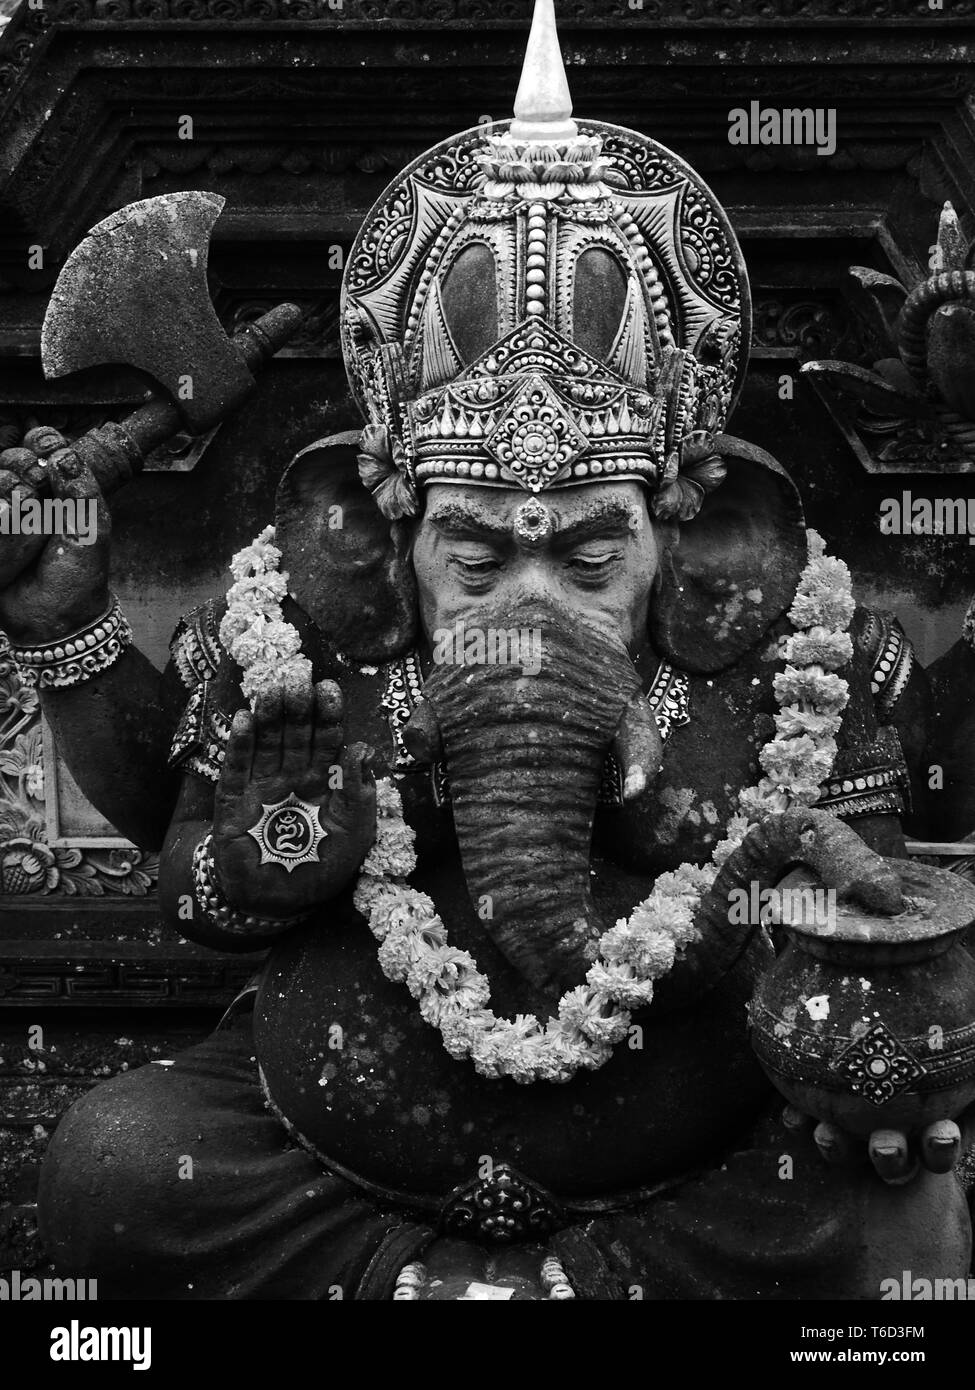 Close up noir et blanc d'une statue de Ganesh, le dieu Hindou à tête d'éléphant à Ubud sur l'île indonésienne de Bali Banque D'Images